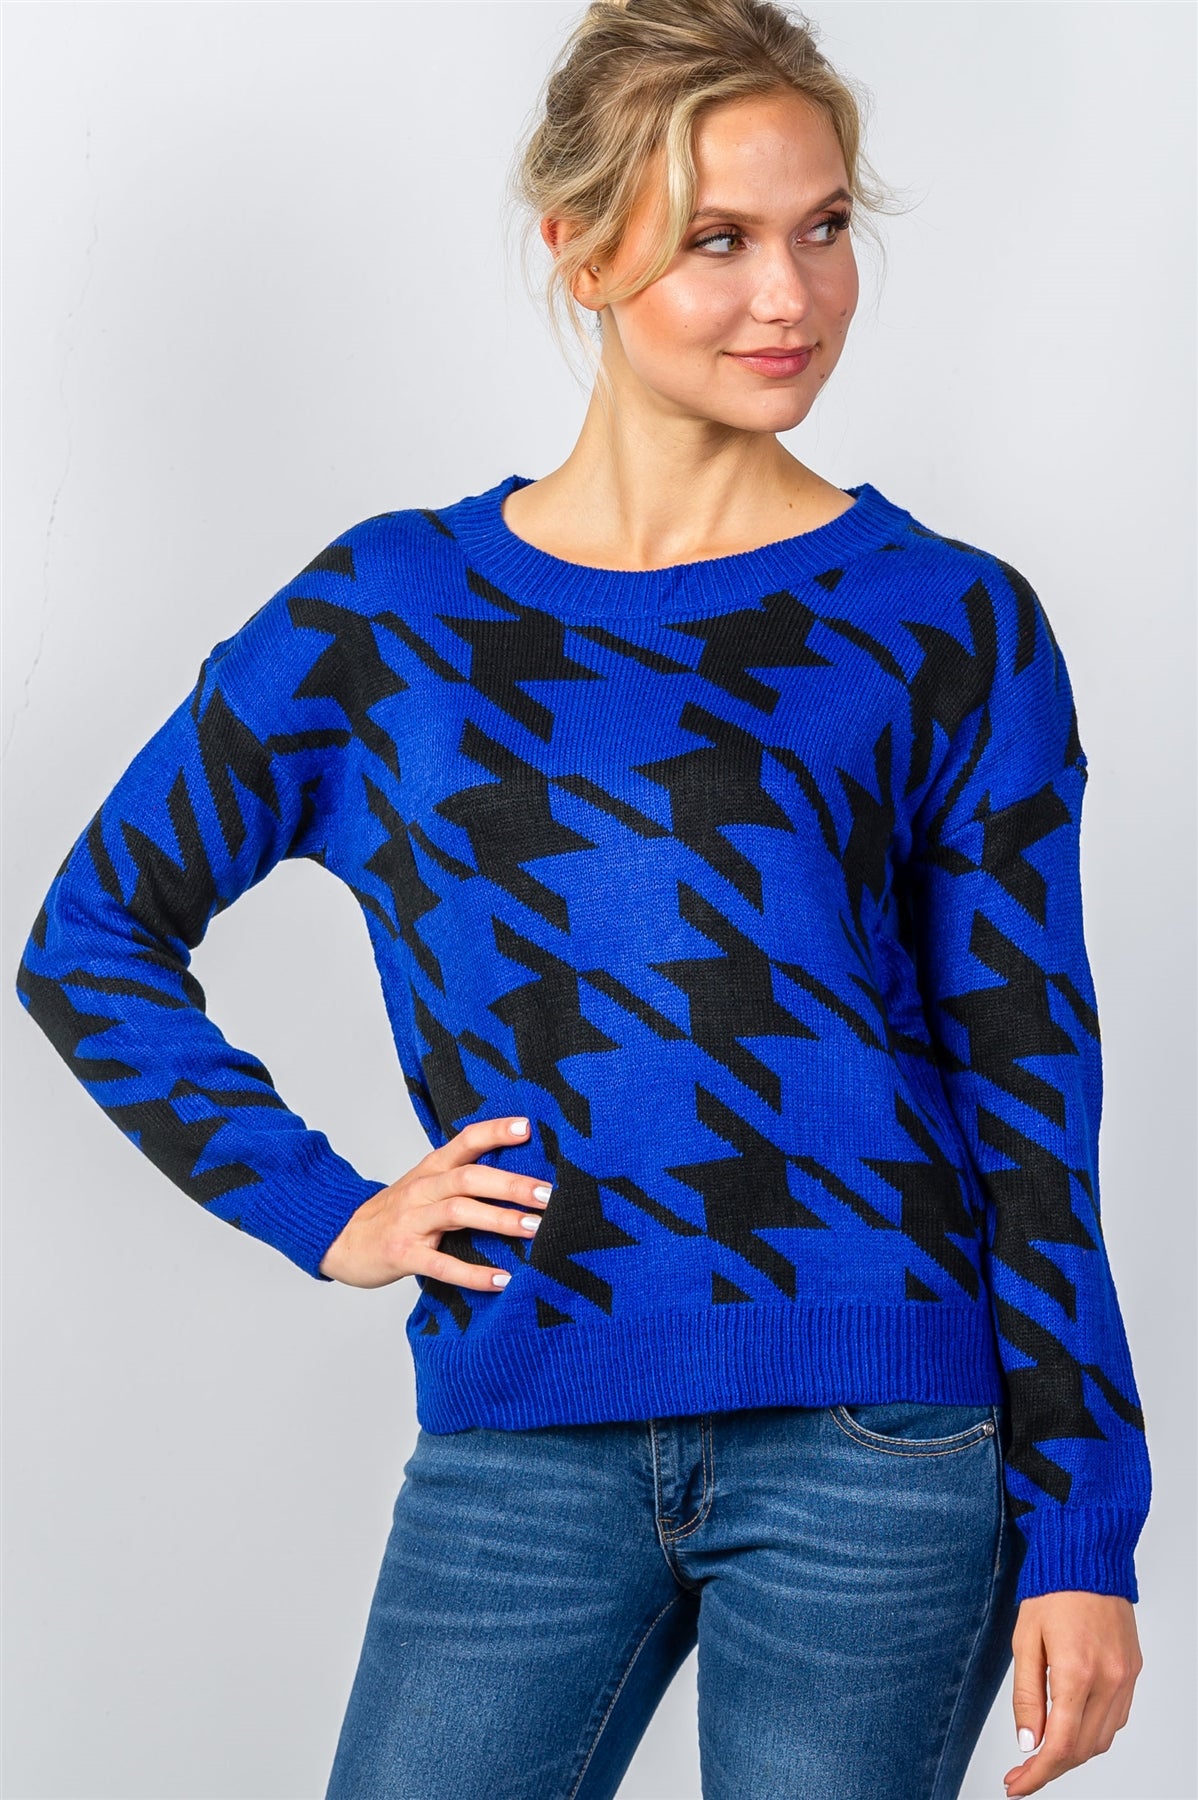 Ladies fashion round neckline geo print color block knit sweater